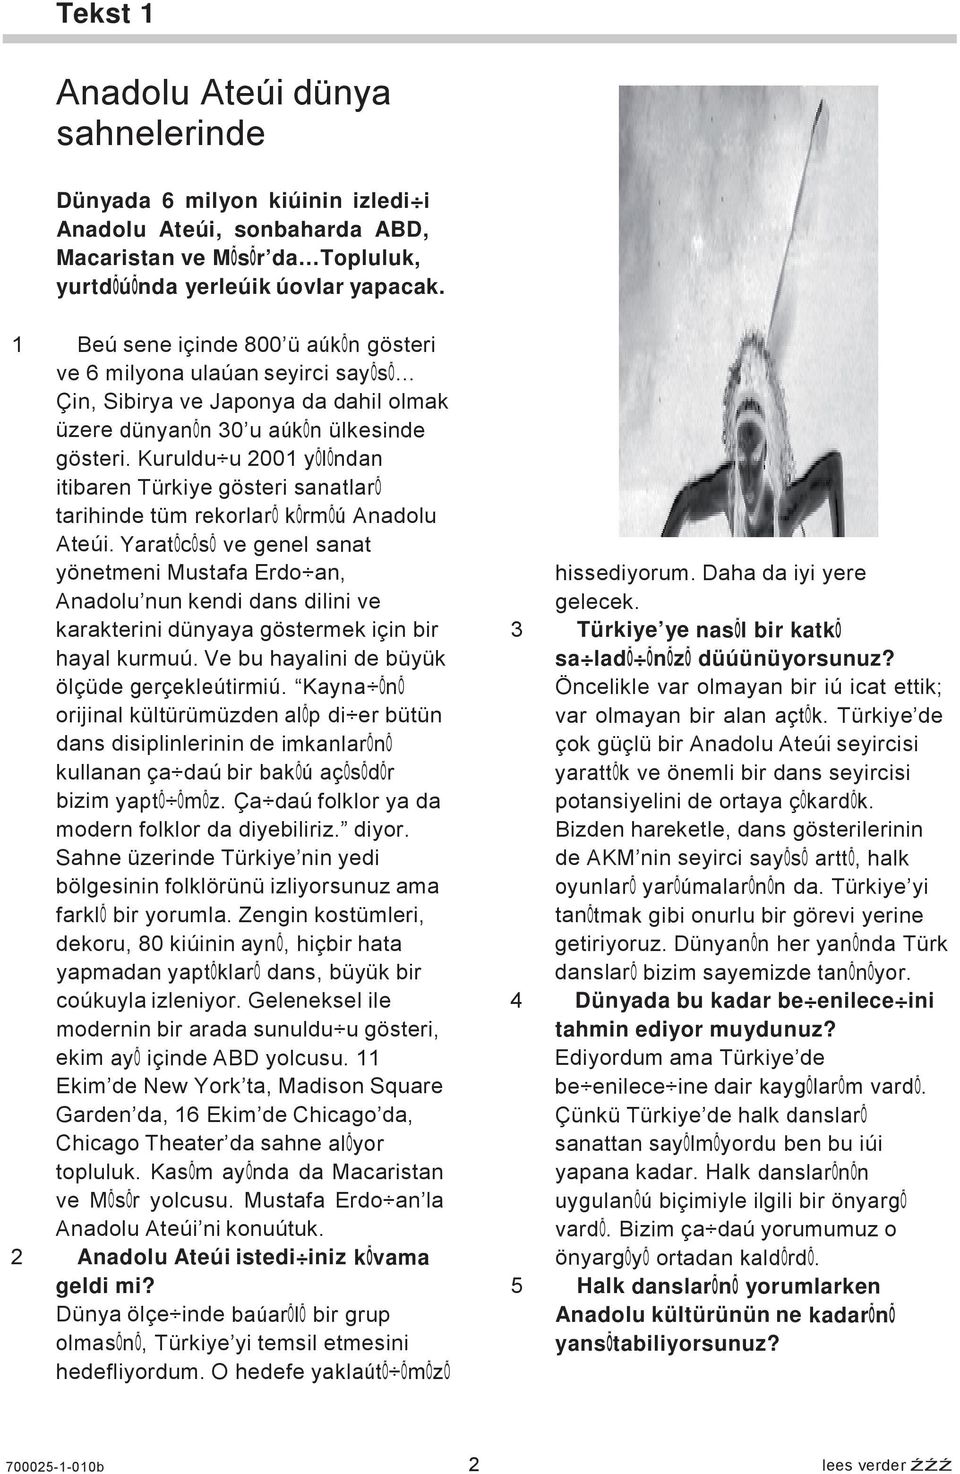 Kuruldu u 2001 yõlõndan itibaren Türkiye gösteri sanatlarõ tarihinde tüm rekorlarõ kõrmõú Anadolu Ateúi.